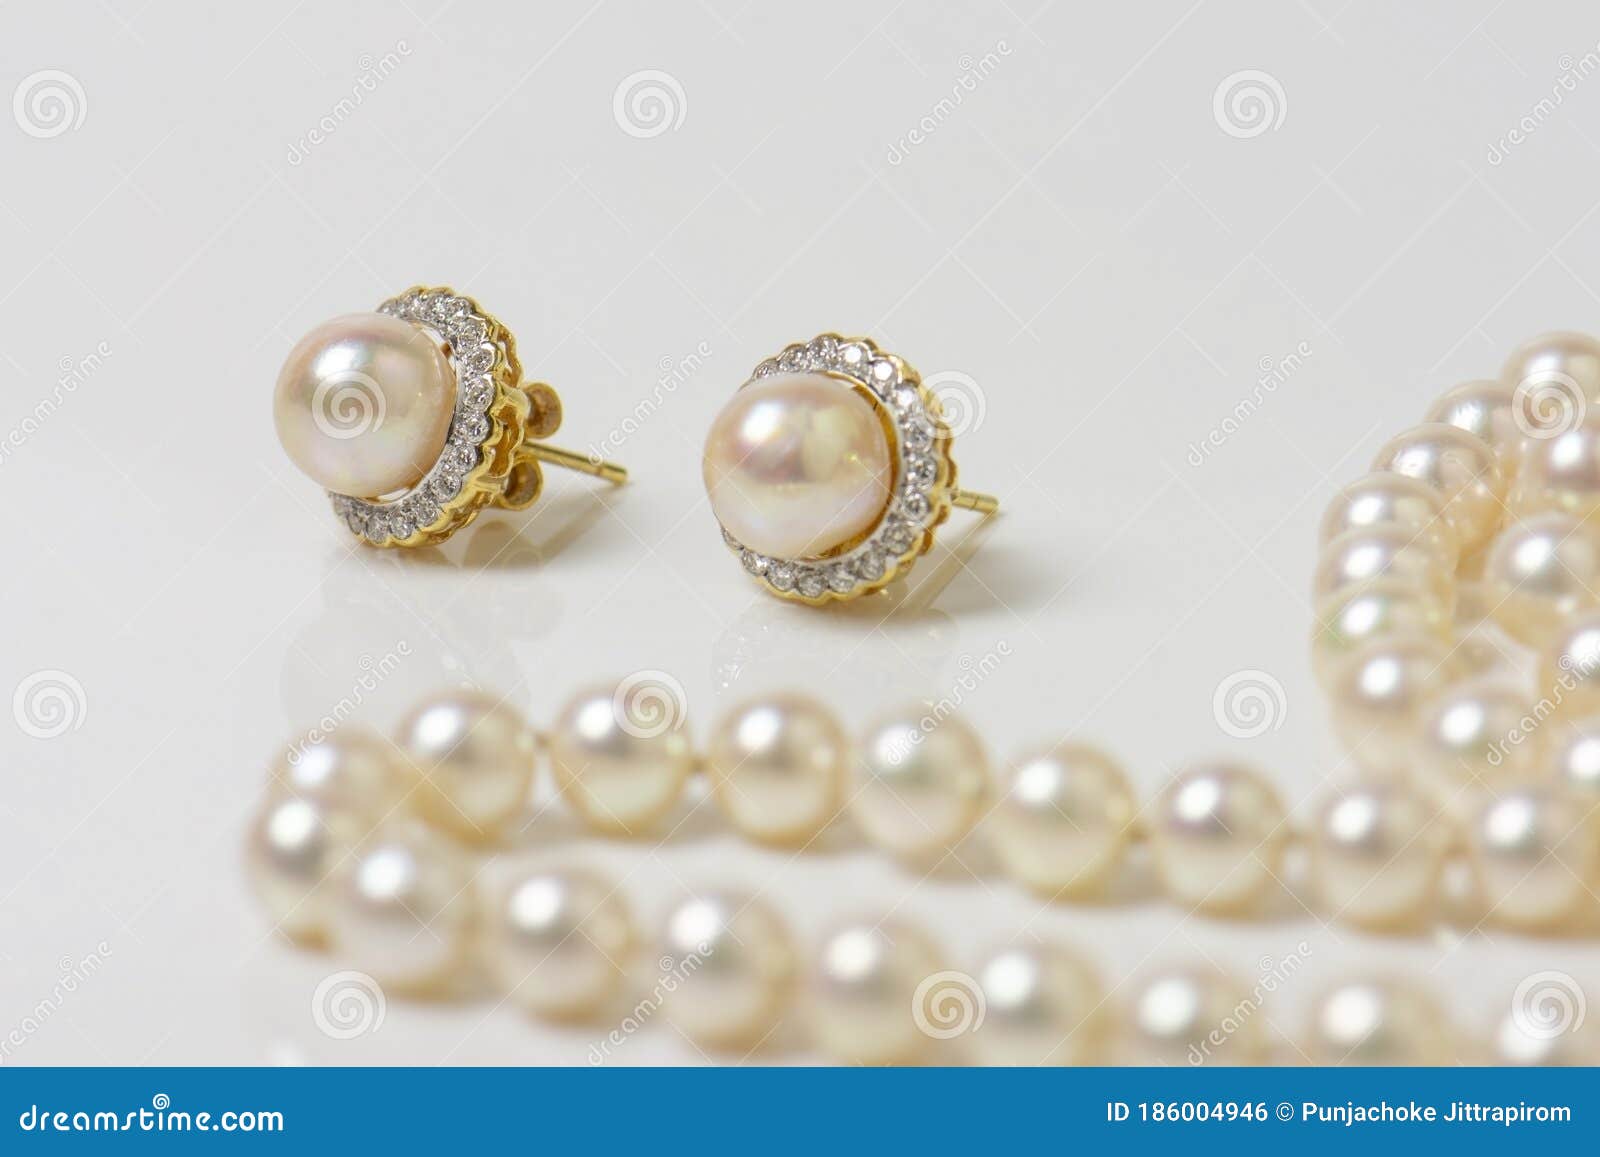 Un Par De Aretes De Perlas Naturales Sobre Blanco Con Collar De Perlas Al Fondo. Foto de archivo - compuesto, poste: 186004946